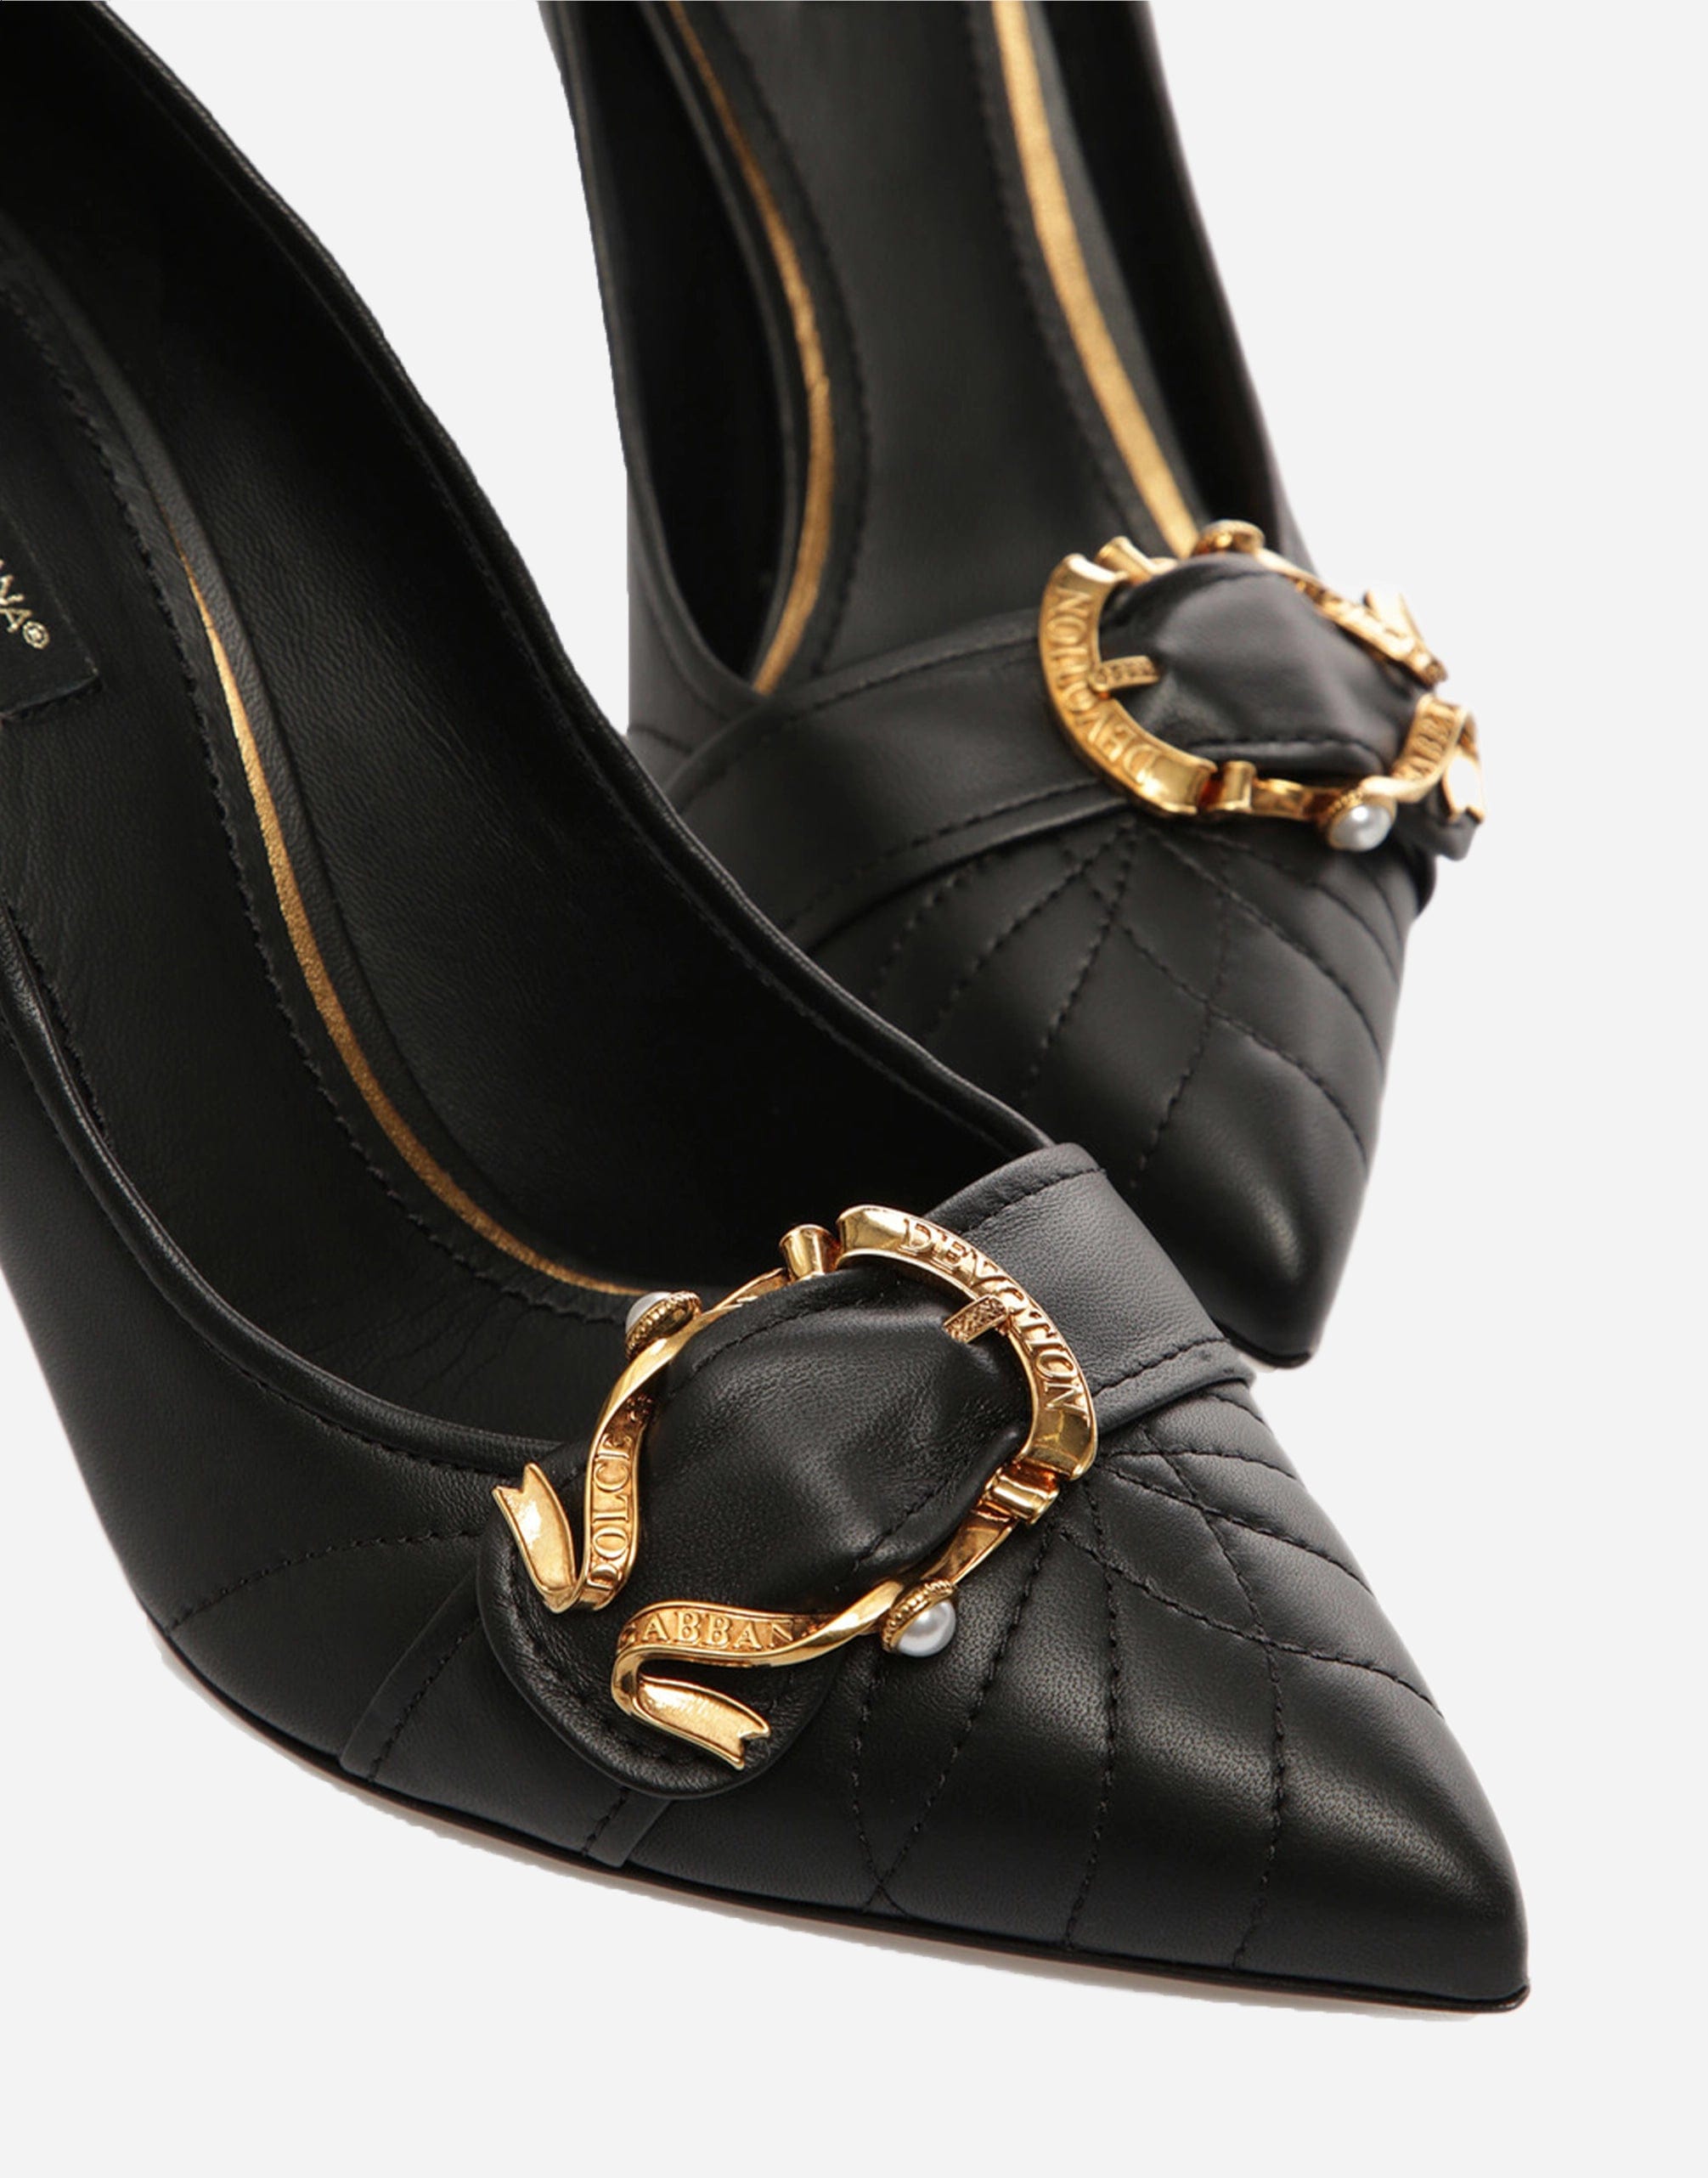 Dolce & Gabbana Devotion Leather Pumps